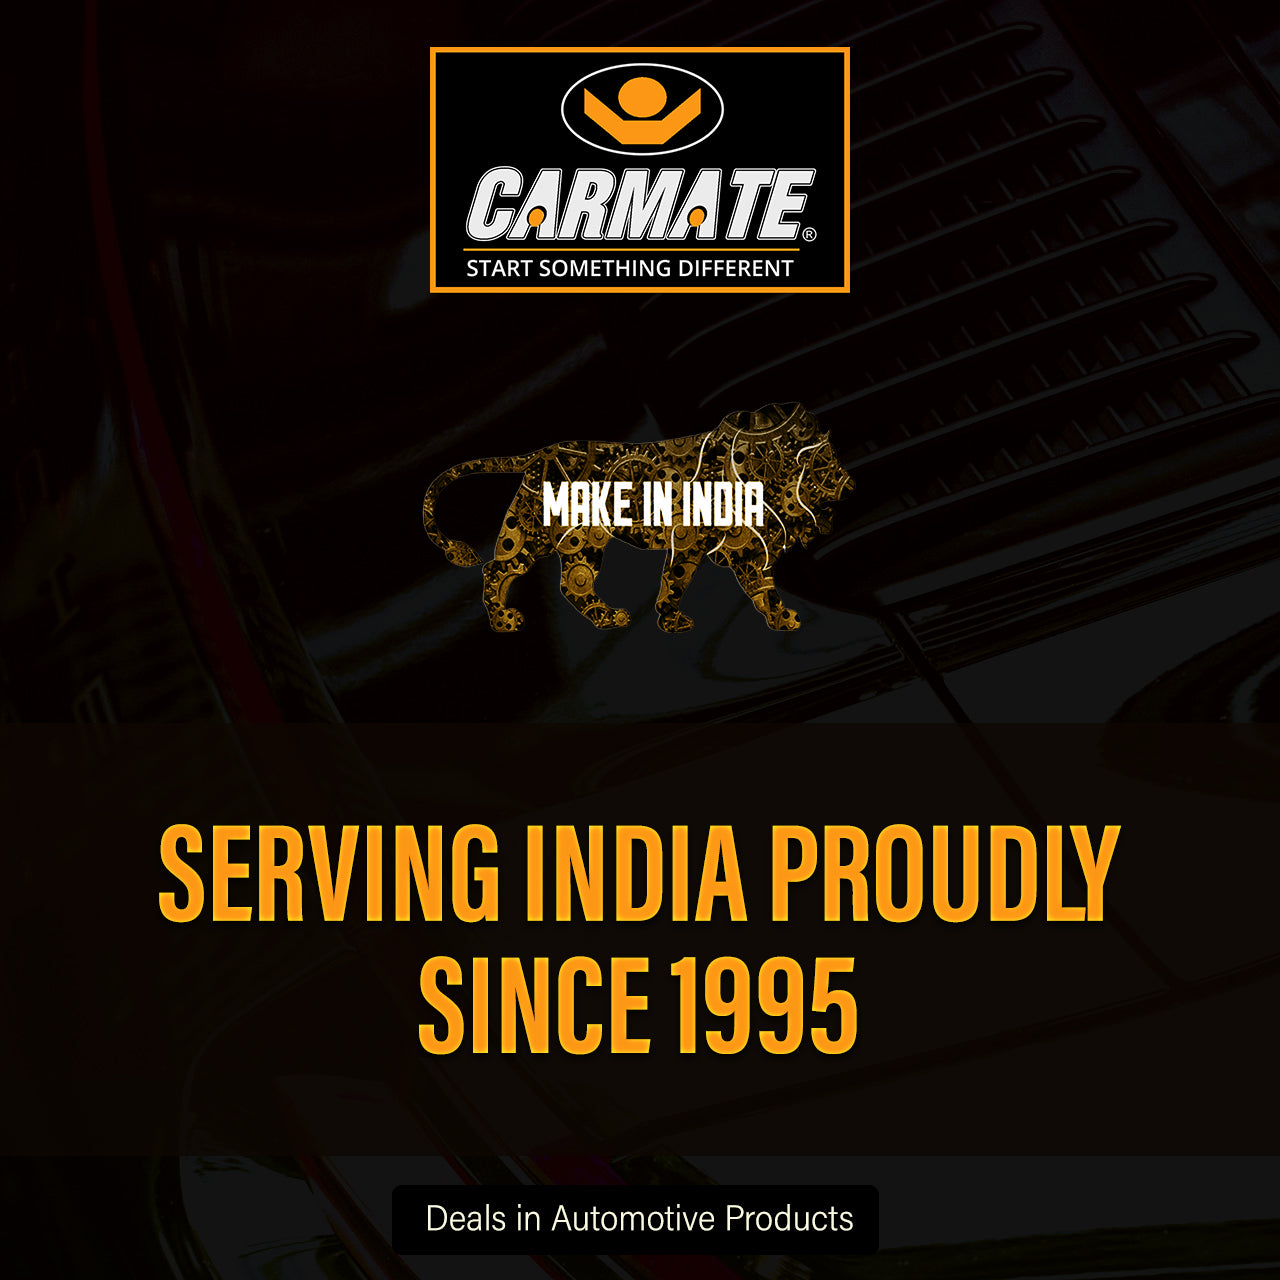 Carmate Pearl Custom Fitting Waterproof Car Body Cover Grey For Maruti - Celerio - CARMATE®